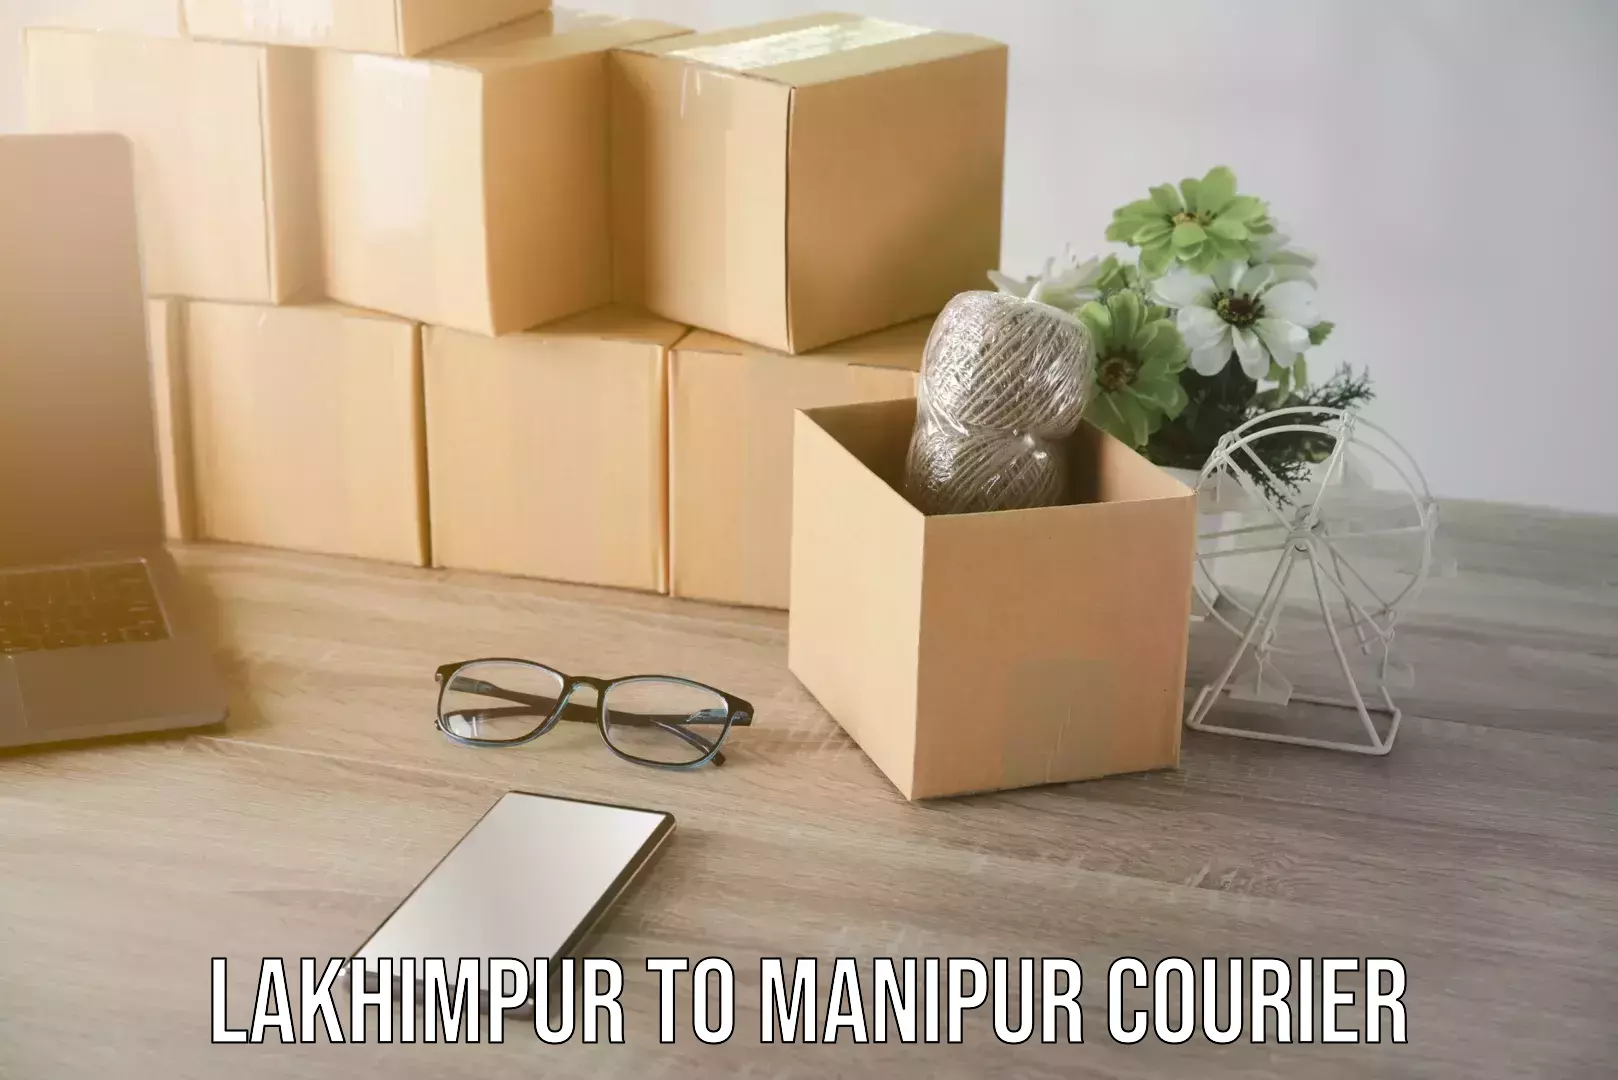 Furniture transport company Lakhimpur to Manipur